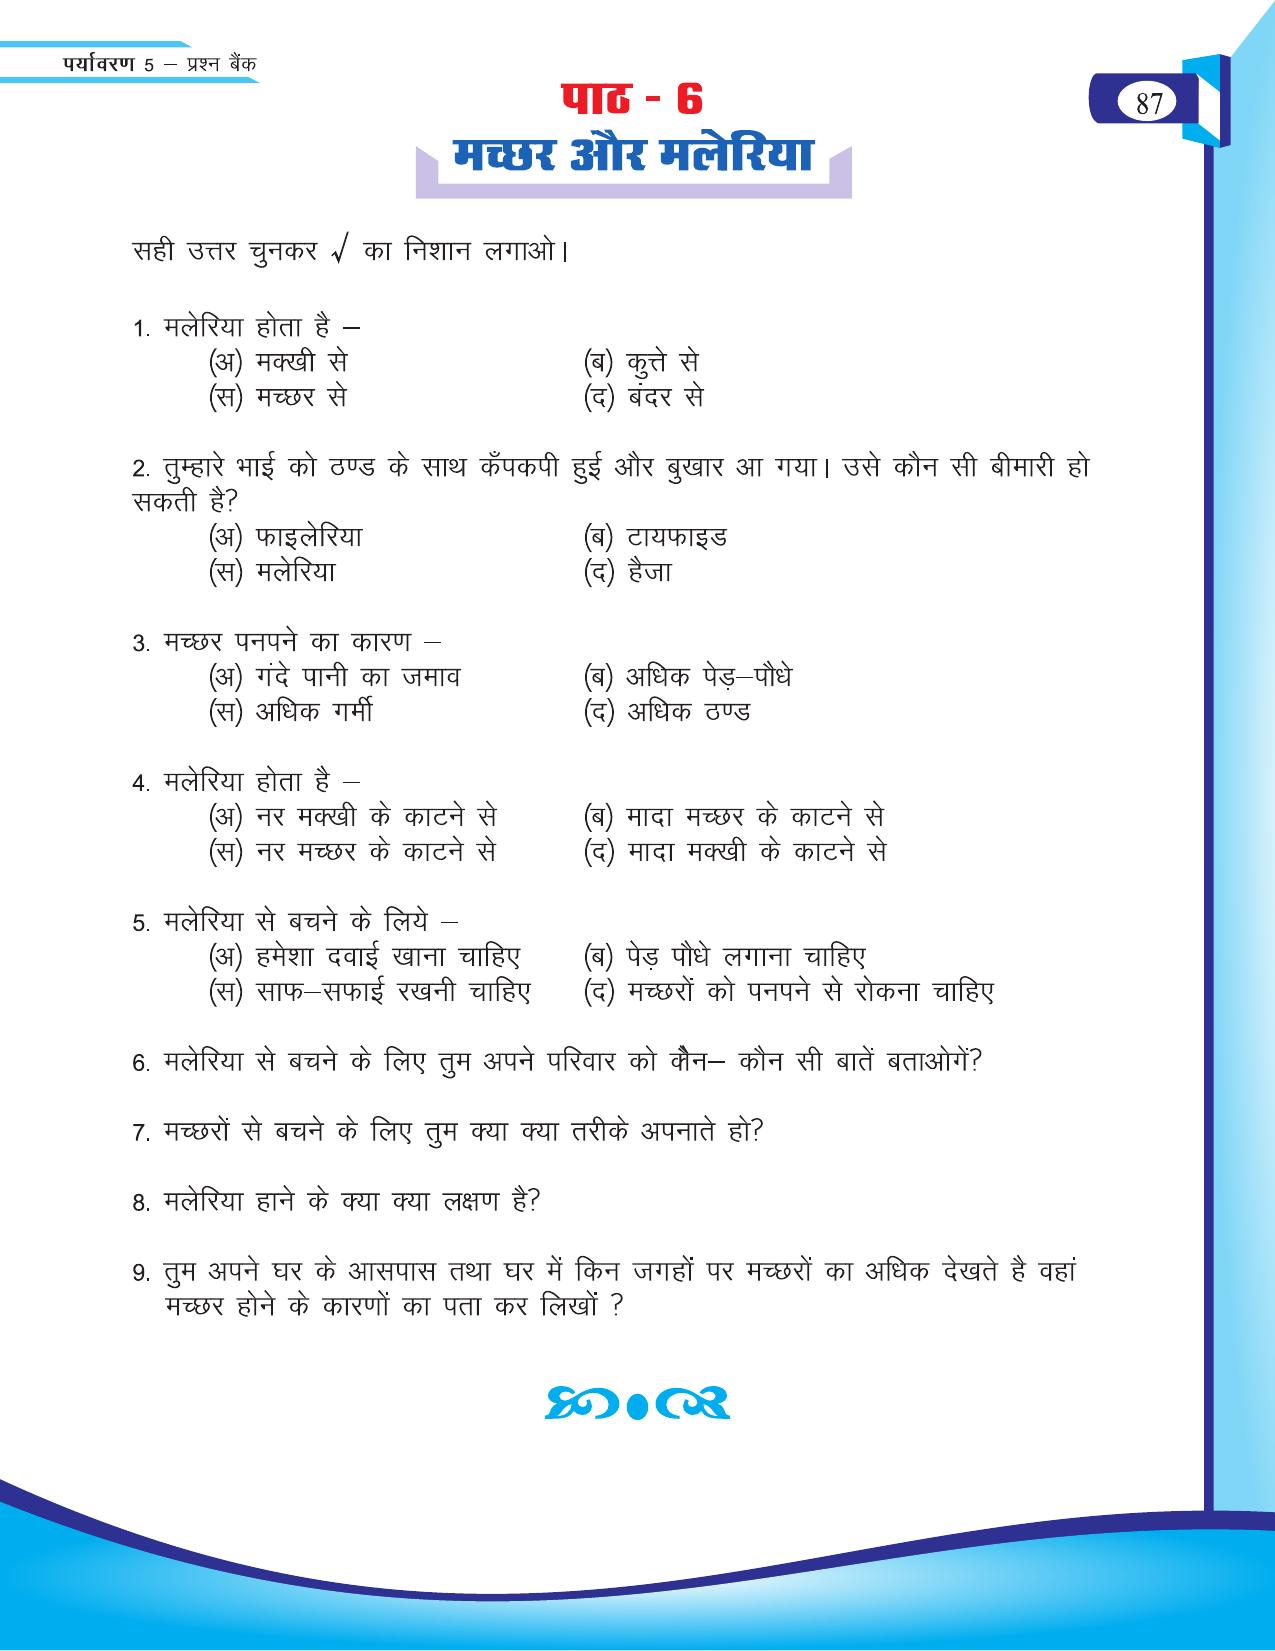 Chhattisgarh Board Class 5 EVS Question Bank 2015-16 - Page 13